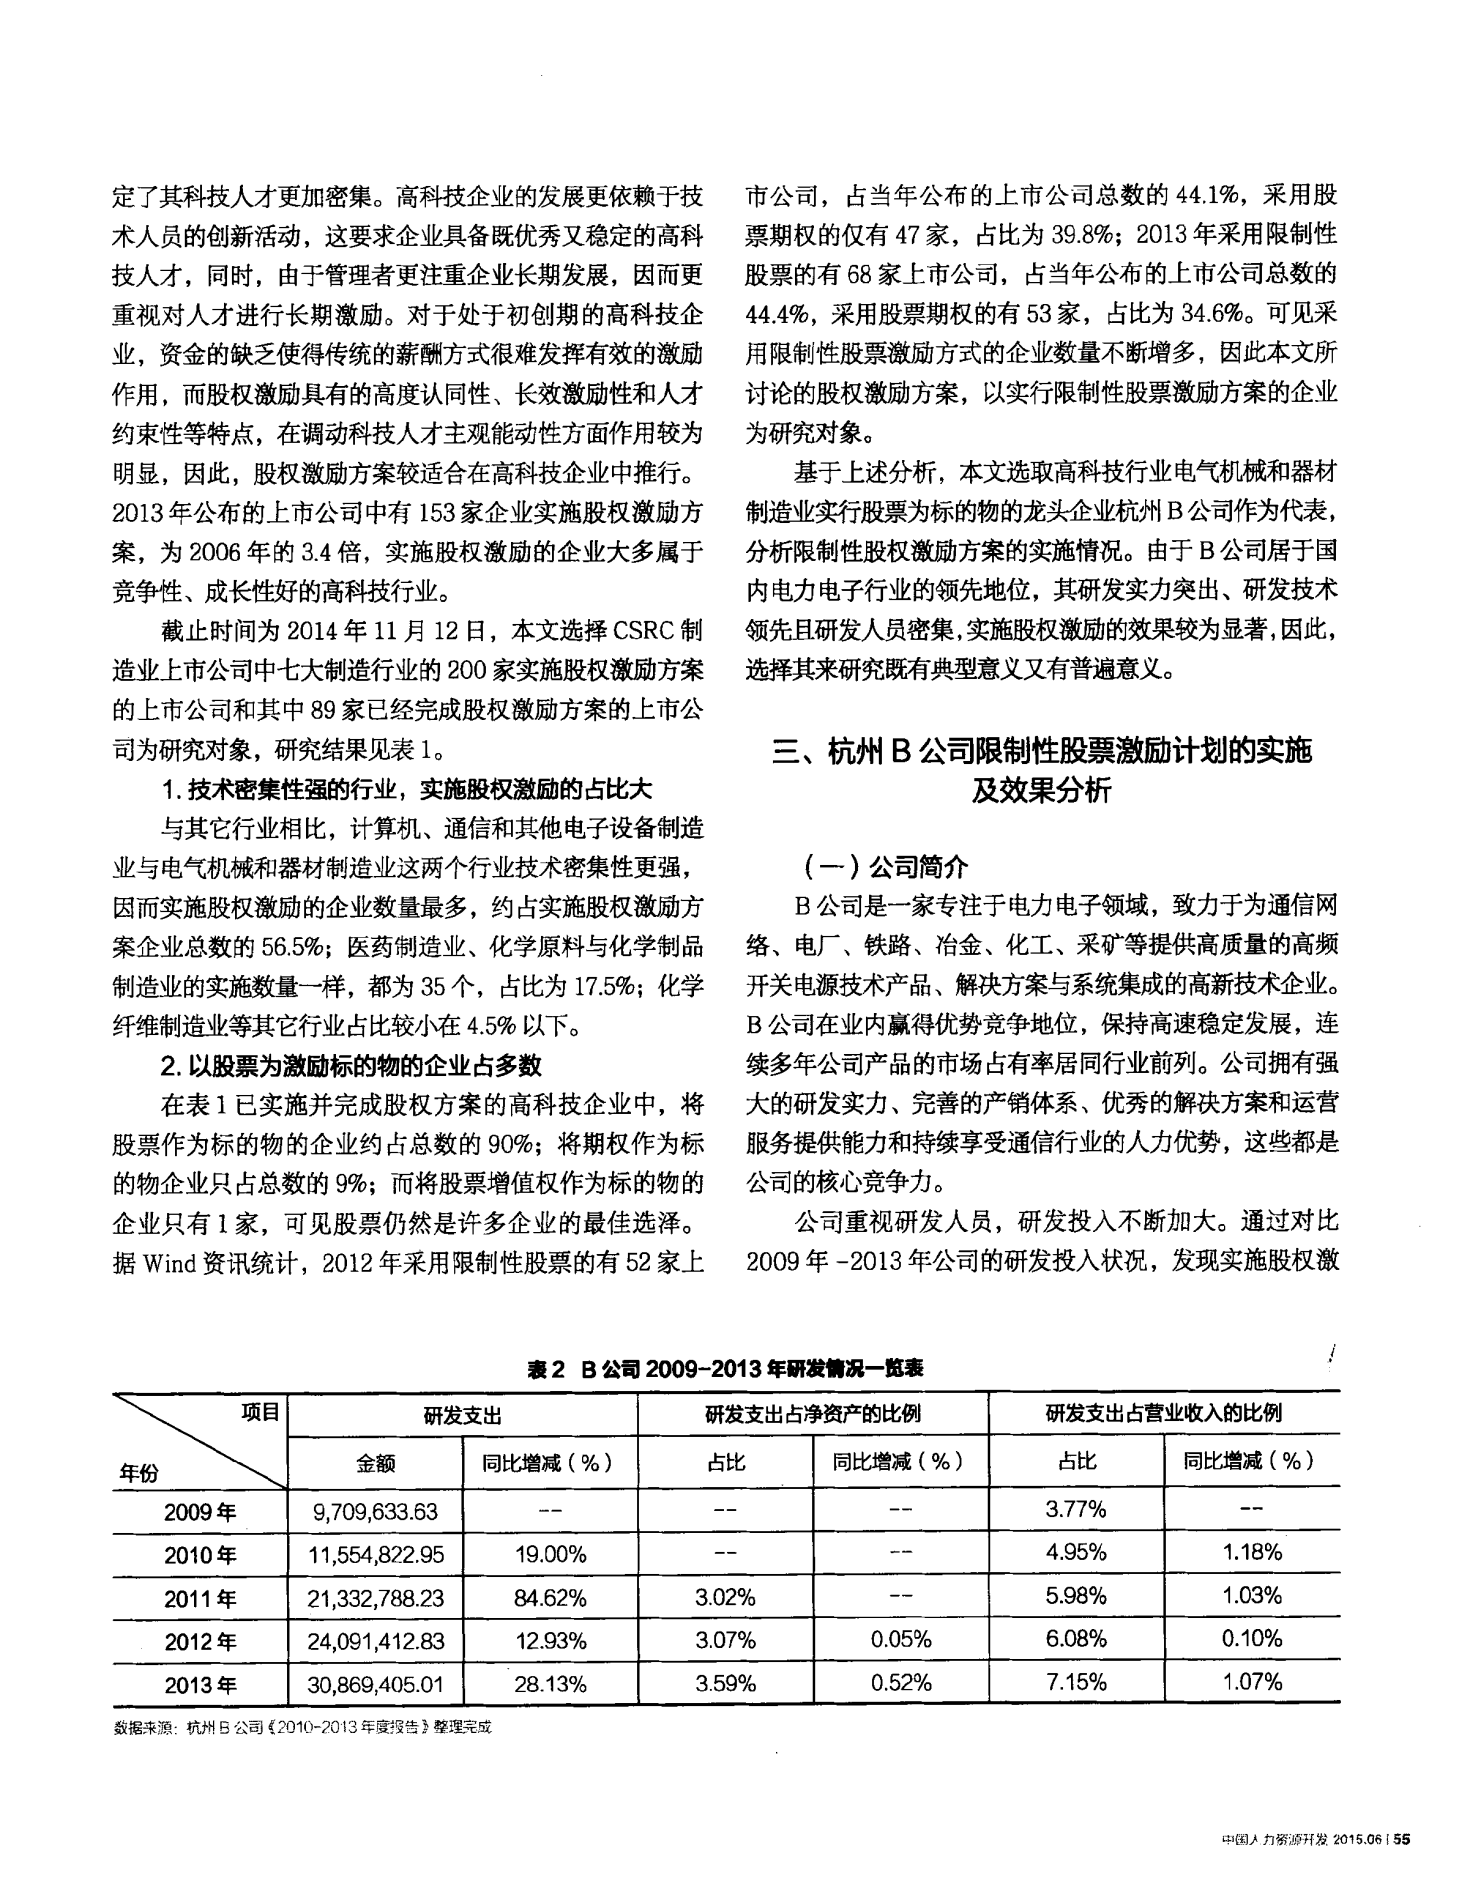 高科技企业限制性股票激励实施——以杭州B公司为例